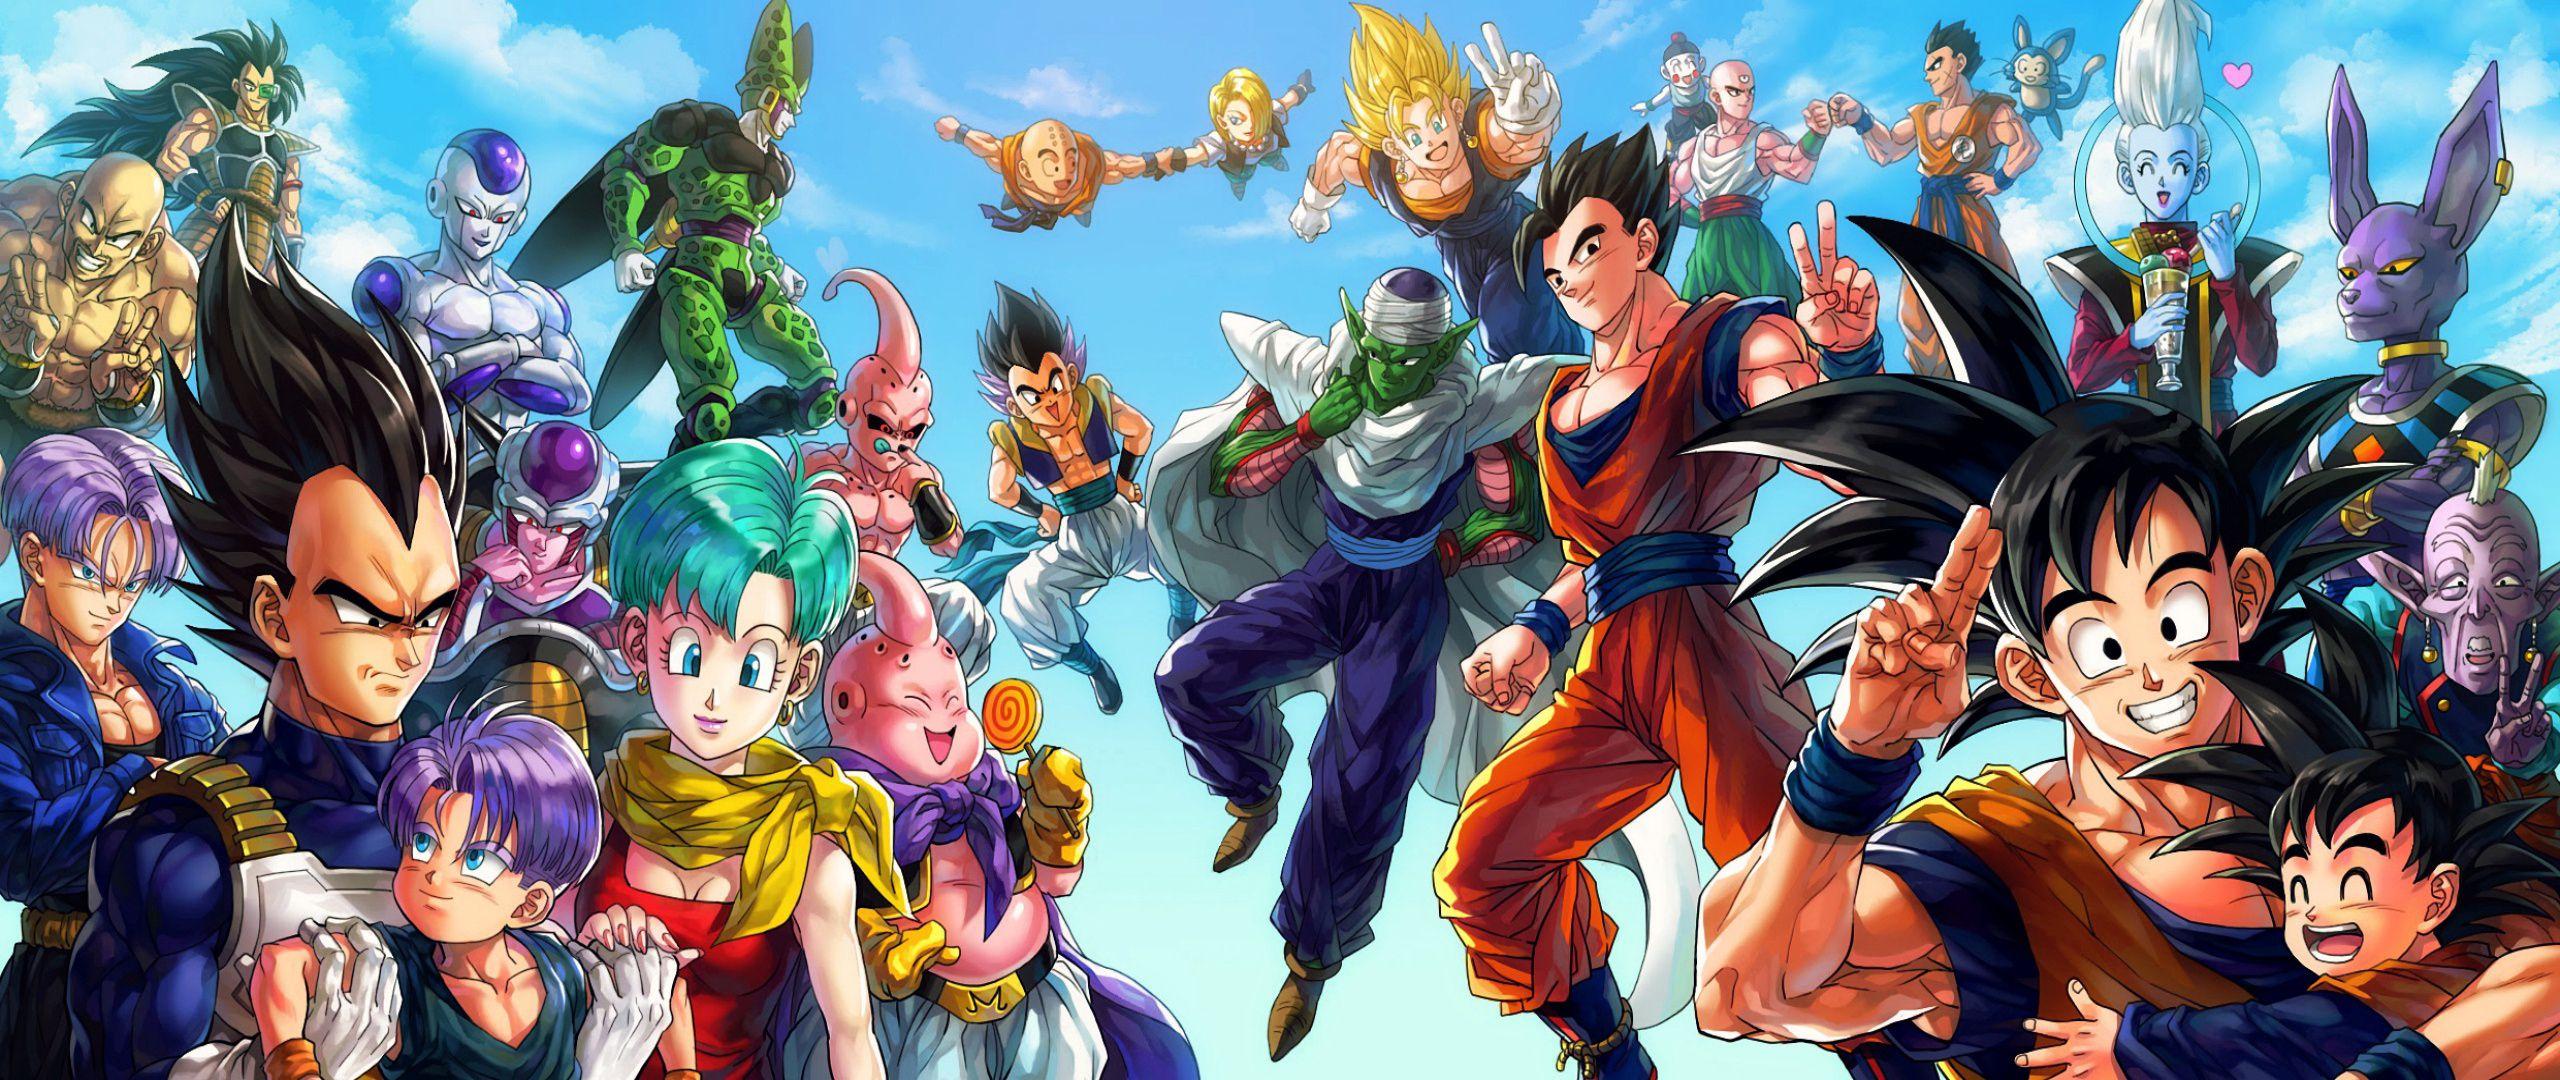 A group of Dragon Ball Z characters including Goku, Vegeta, Gohan, and Piccolo. - Dragon Ball